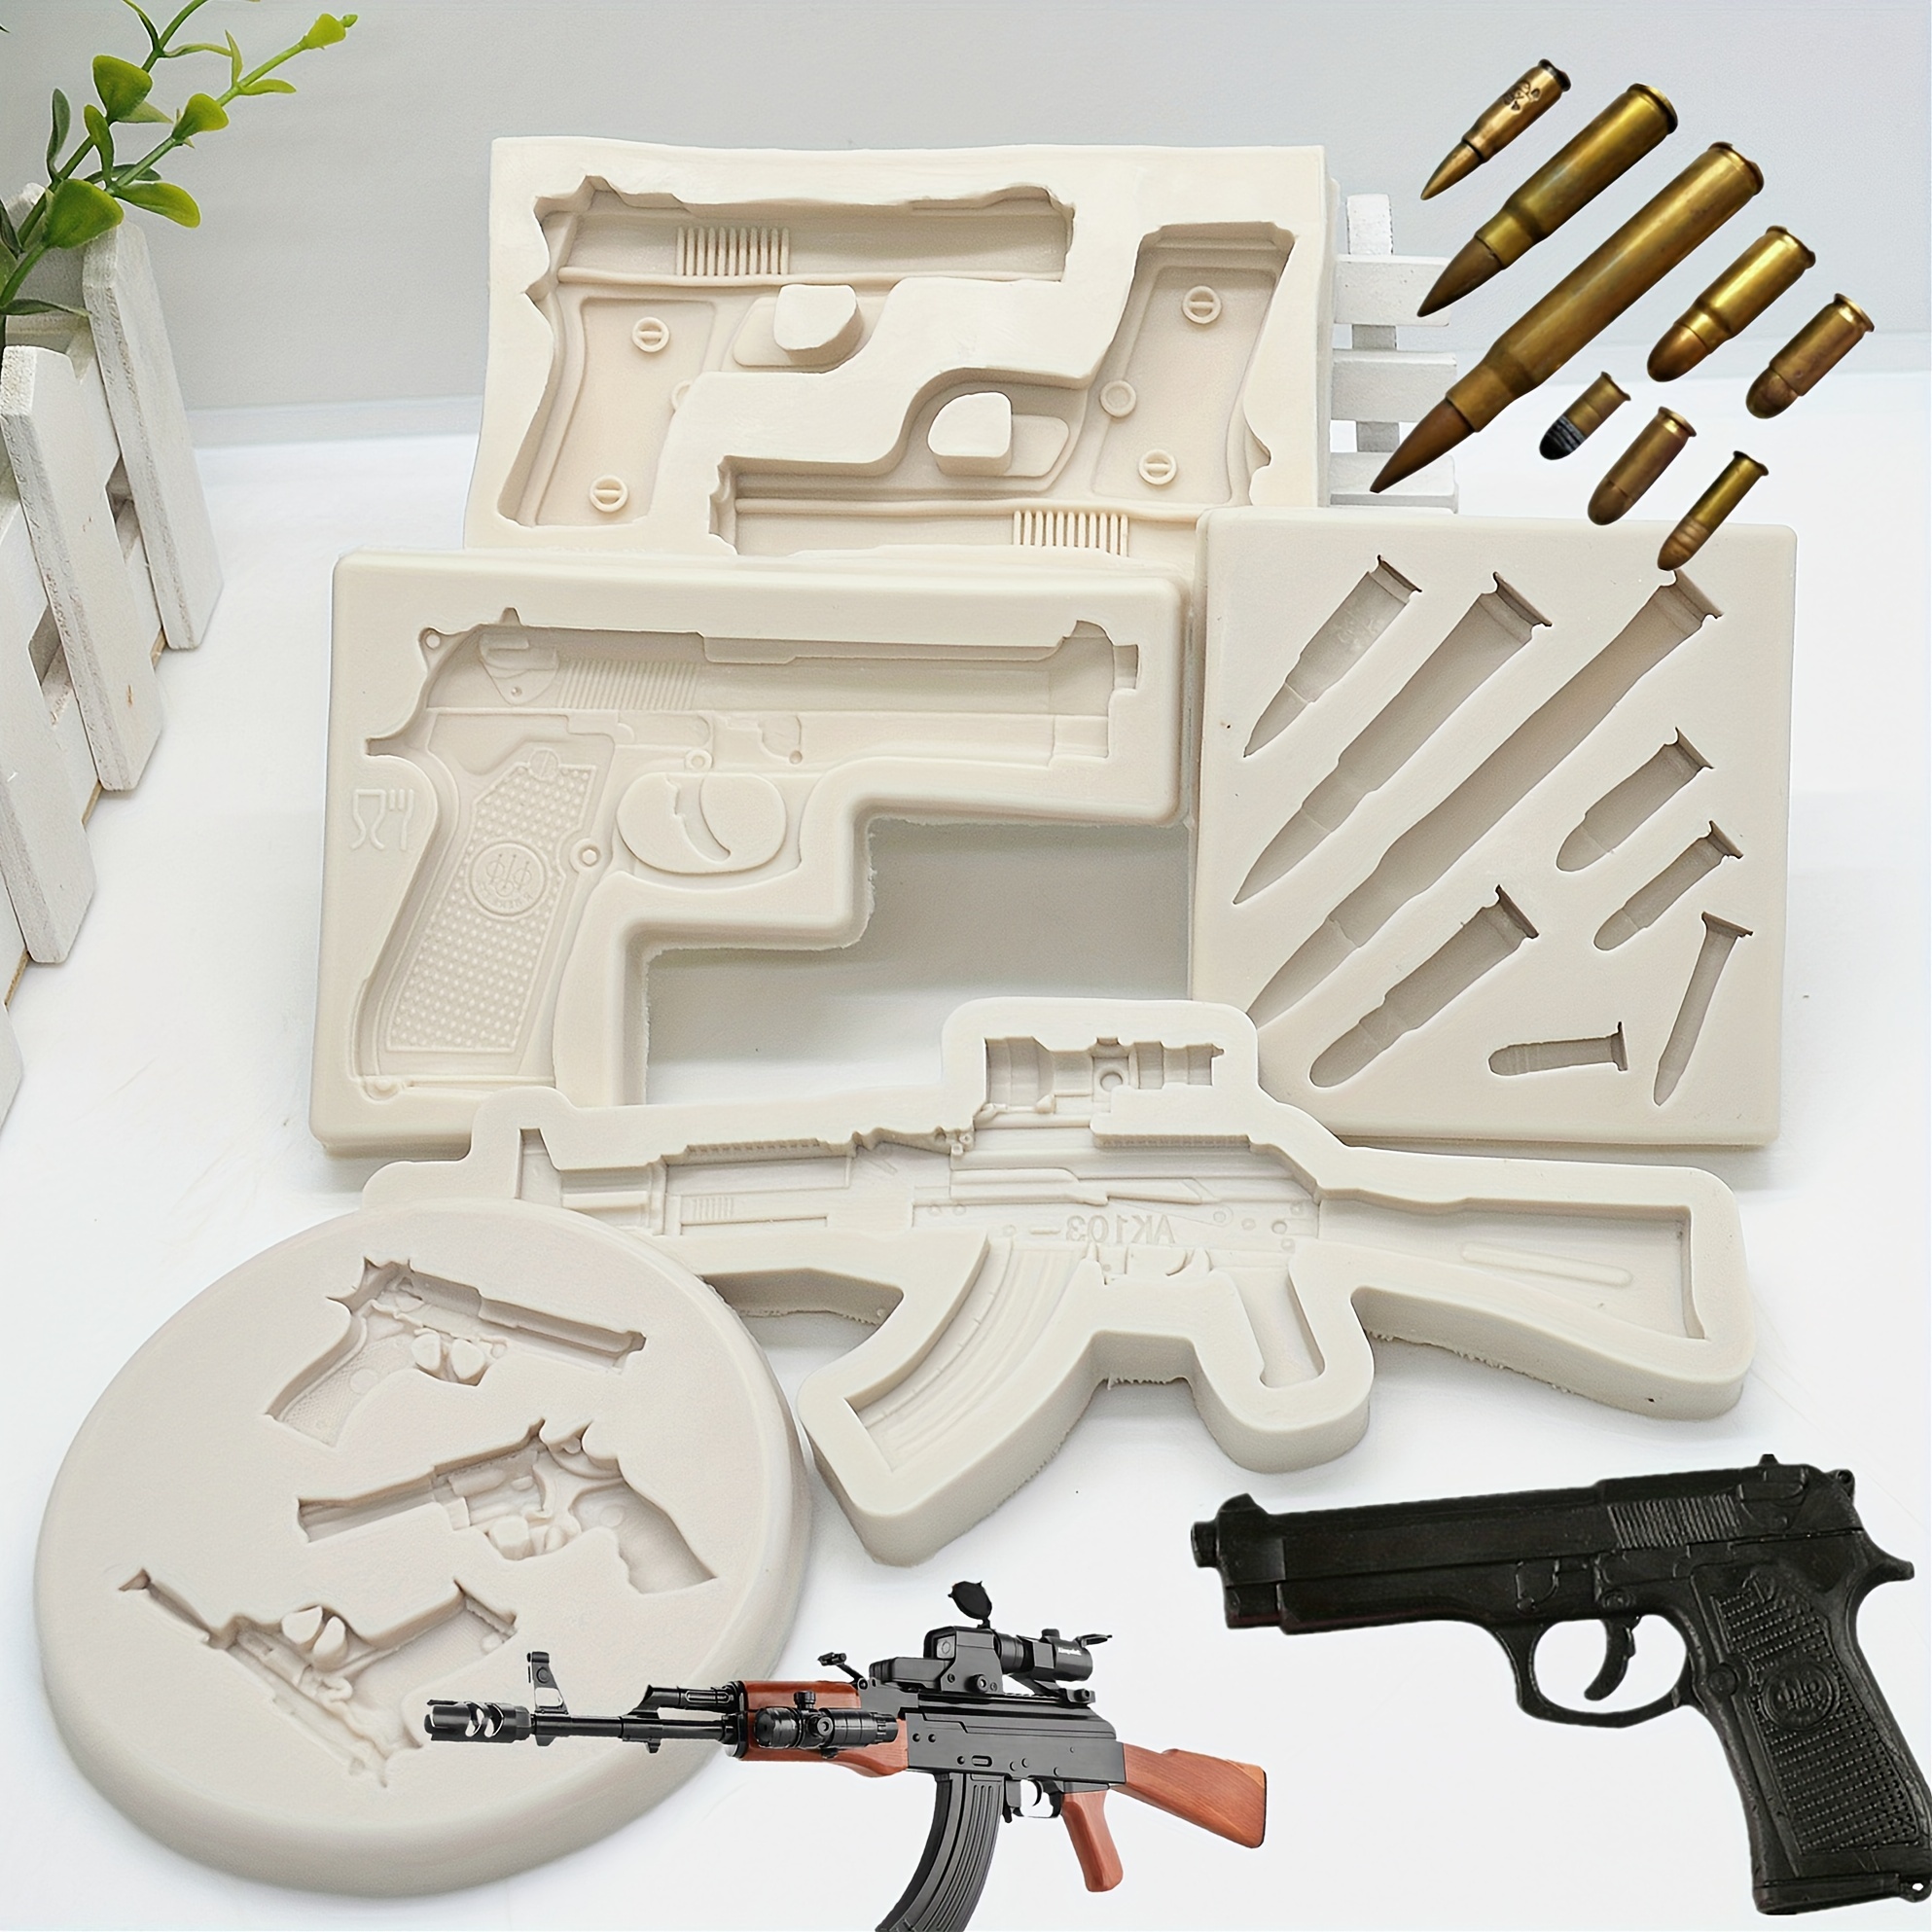 Skull & Guns Graphite Mold For Metal Casting 3D Ingot Coin - Shop Graphite  Casting Molds